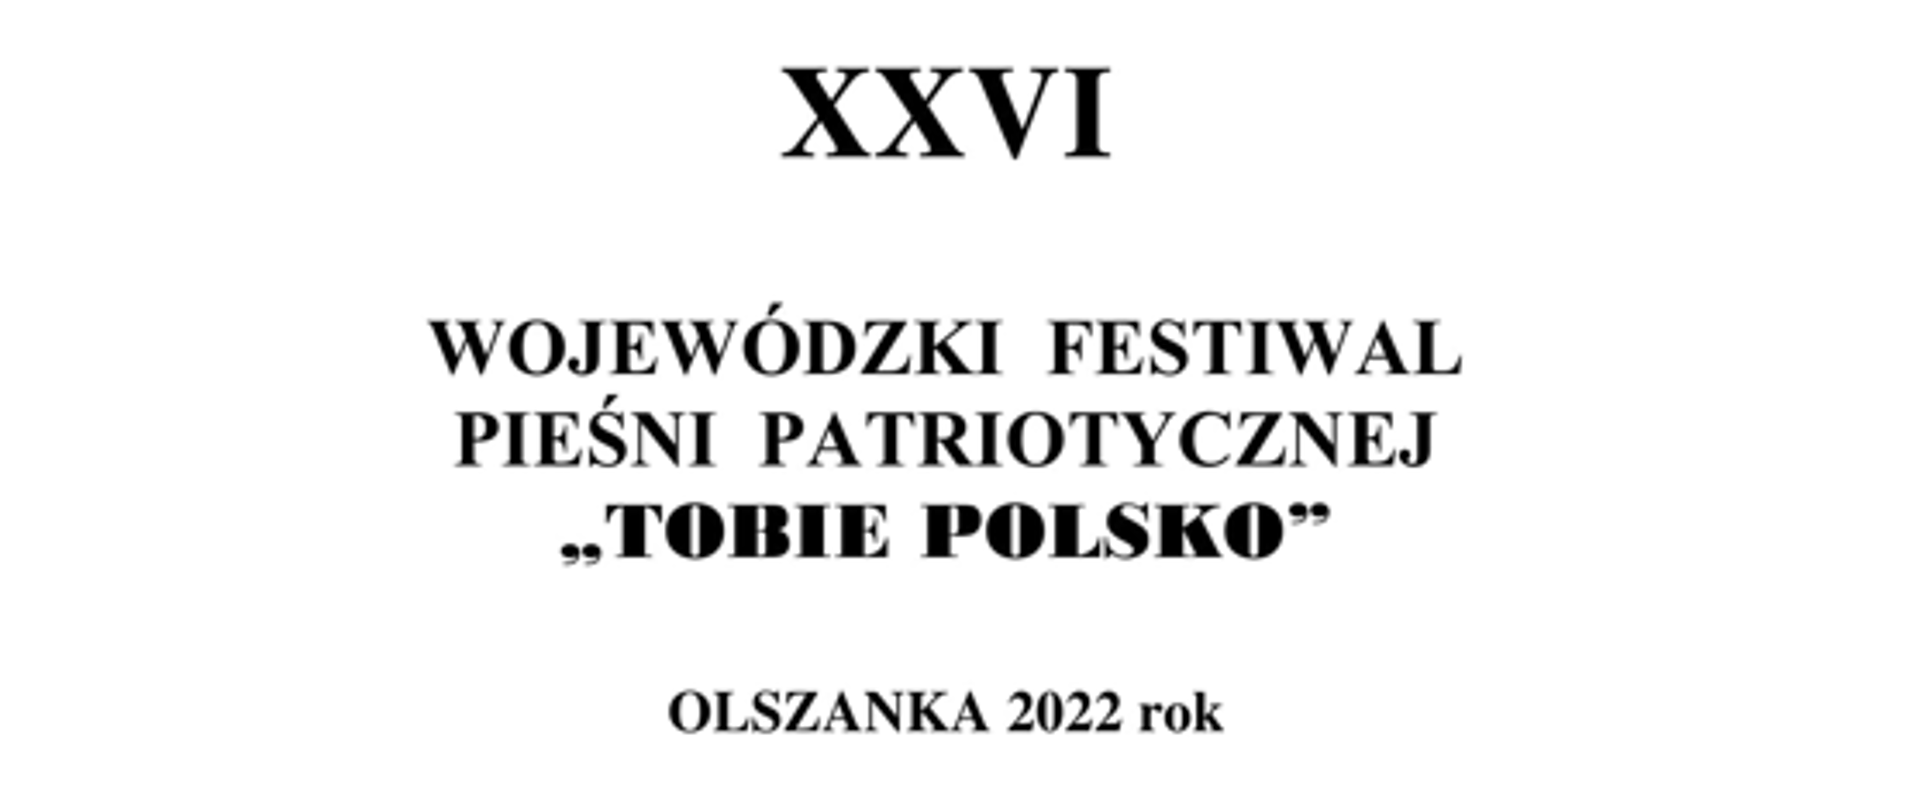 Czerny napis na białym tle XXVI Wojewódzki Festiwal Pieśni Patriotycznej „Tobie Polsko”